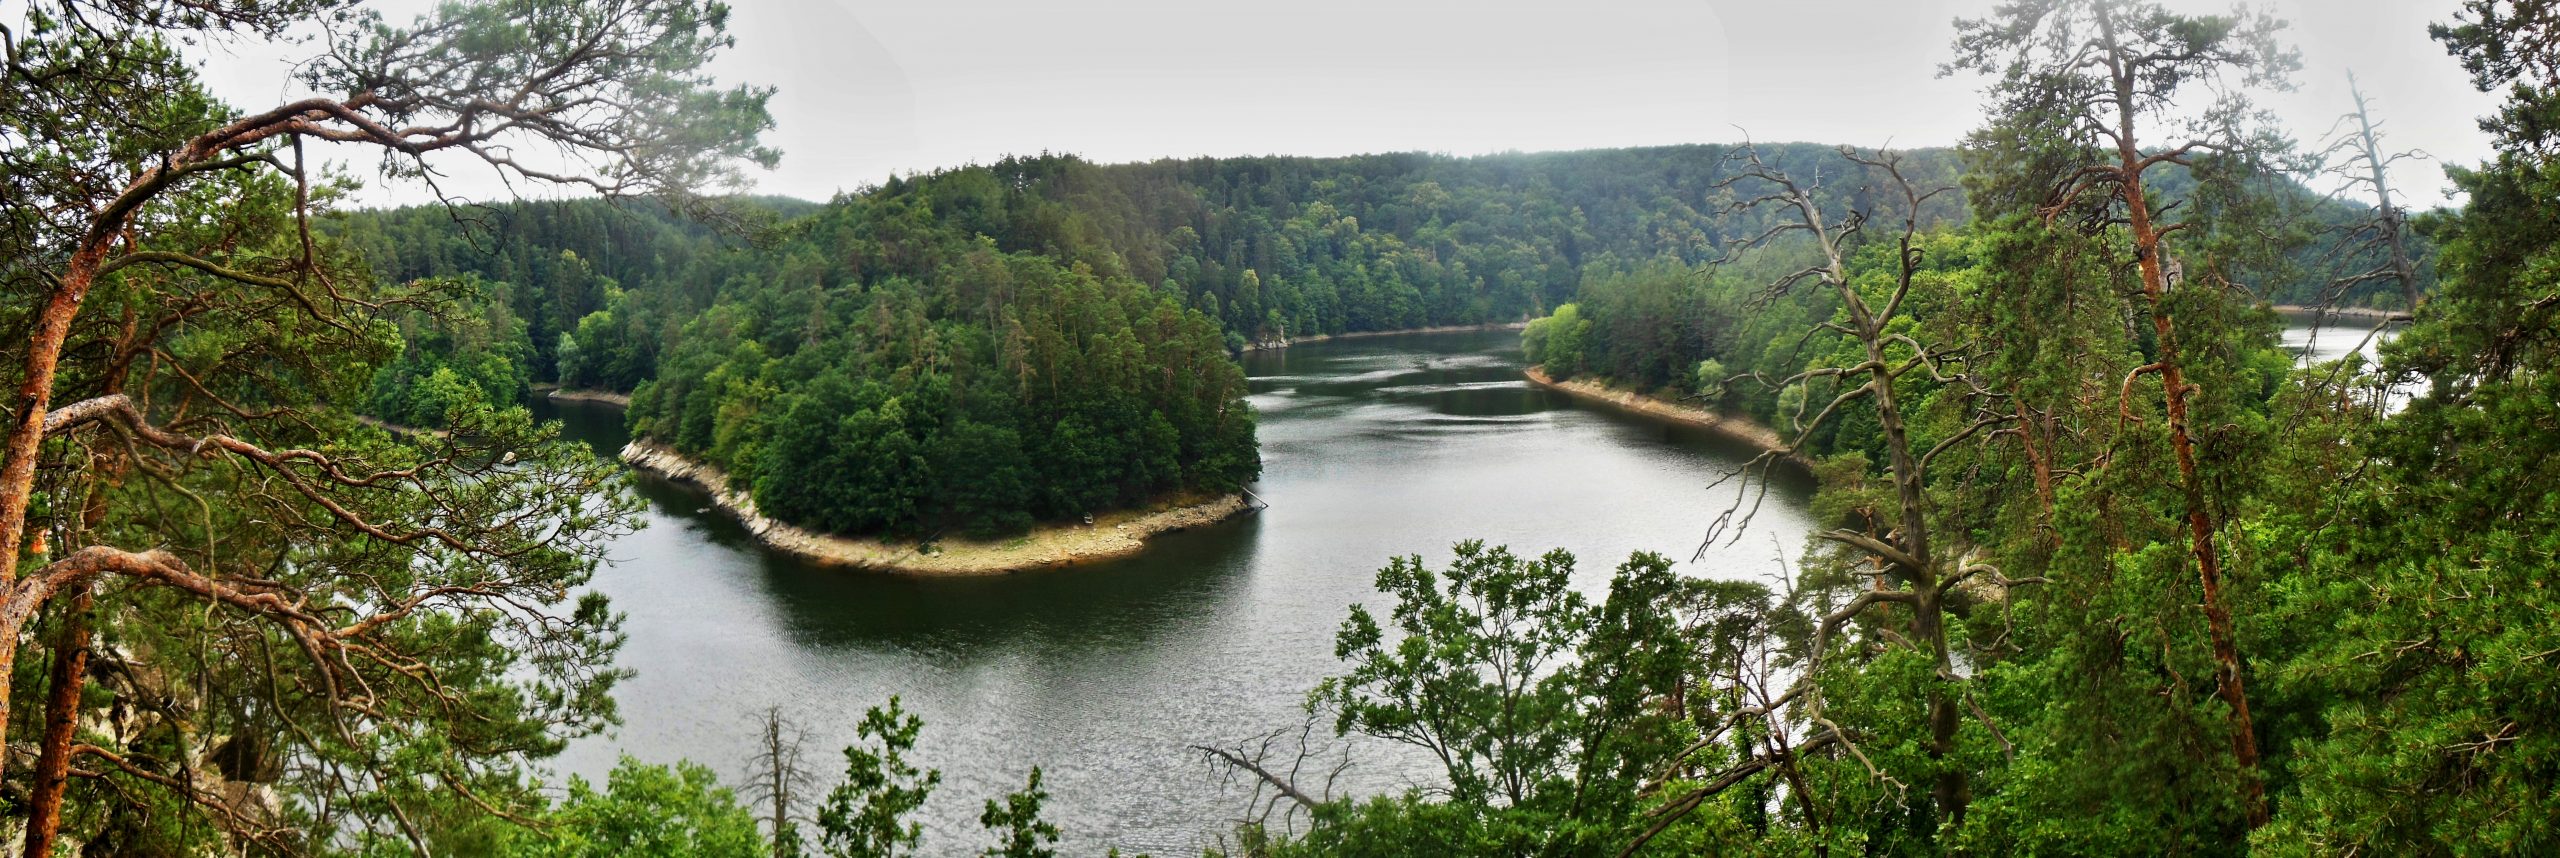 Kozlovský ostrůvek a Dalešická přehrada